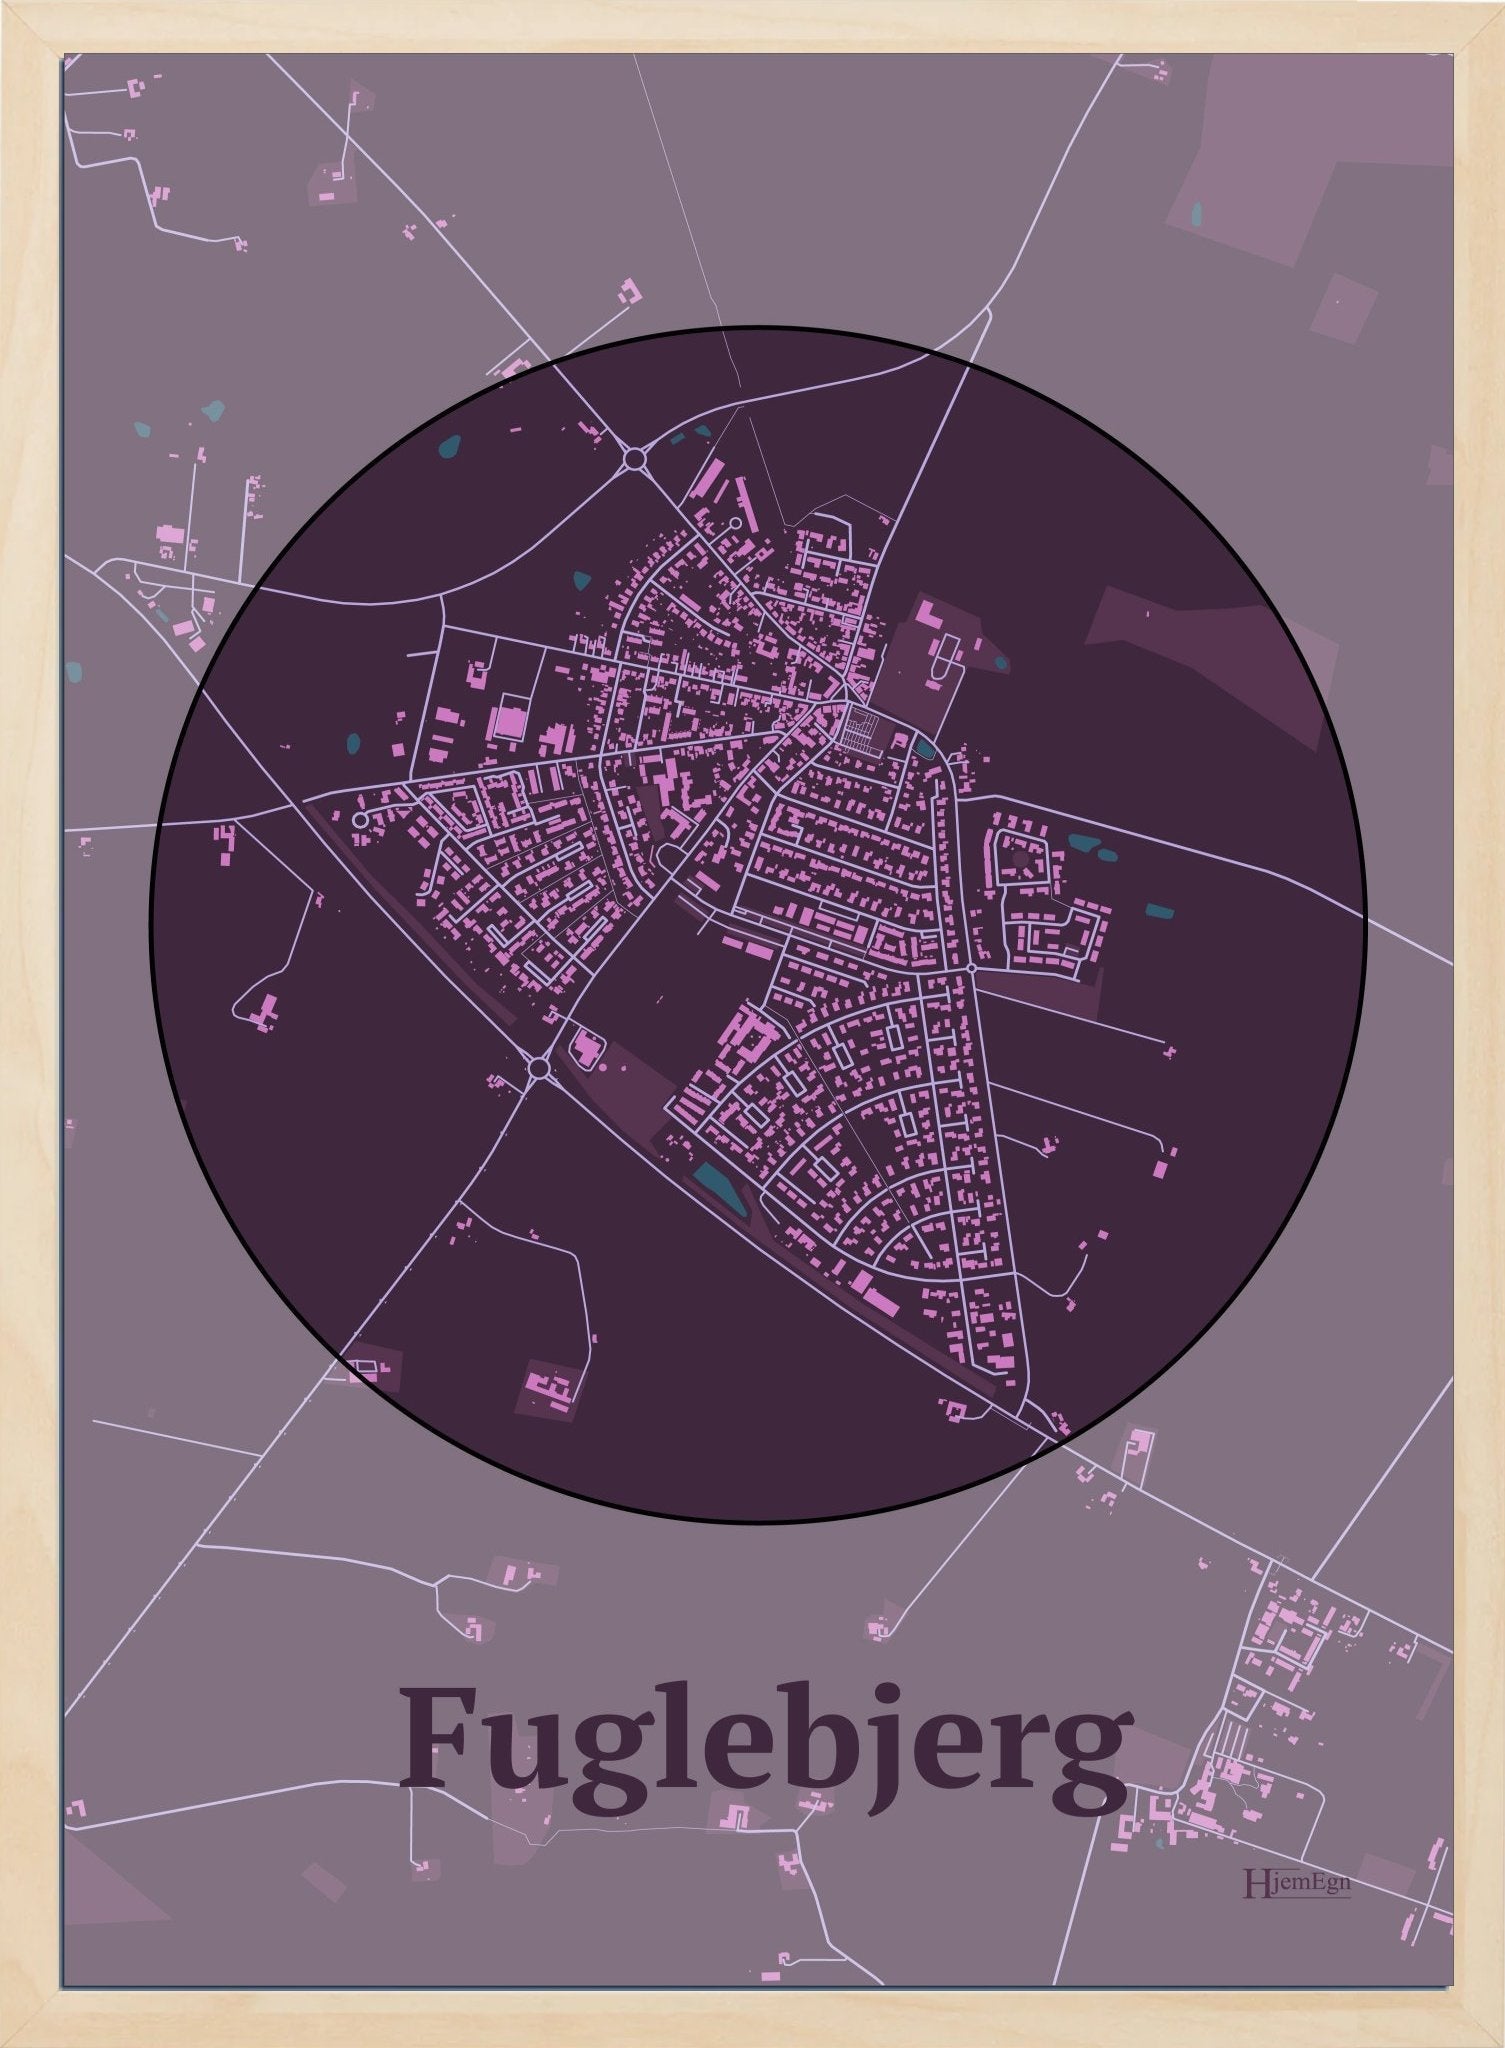 Fuglebjerg plakat i farve mørk rød og HjemEgn.dk design centrum. Design bykort for Fuglebjerg